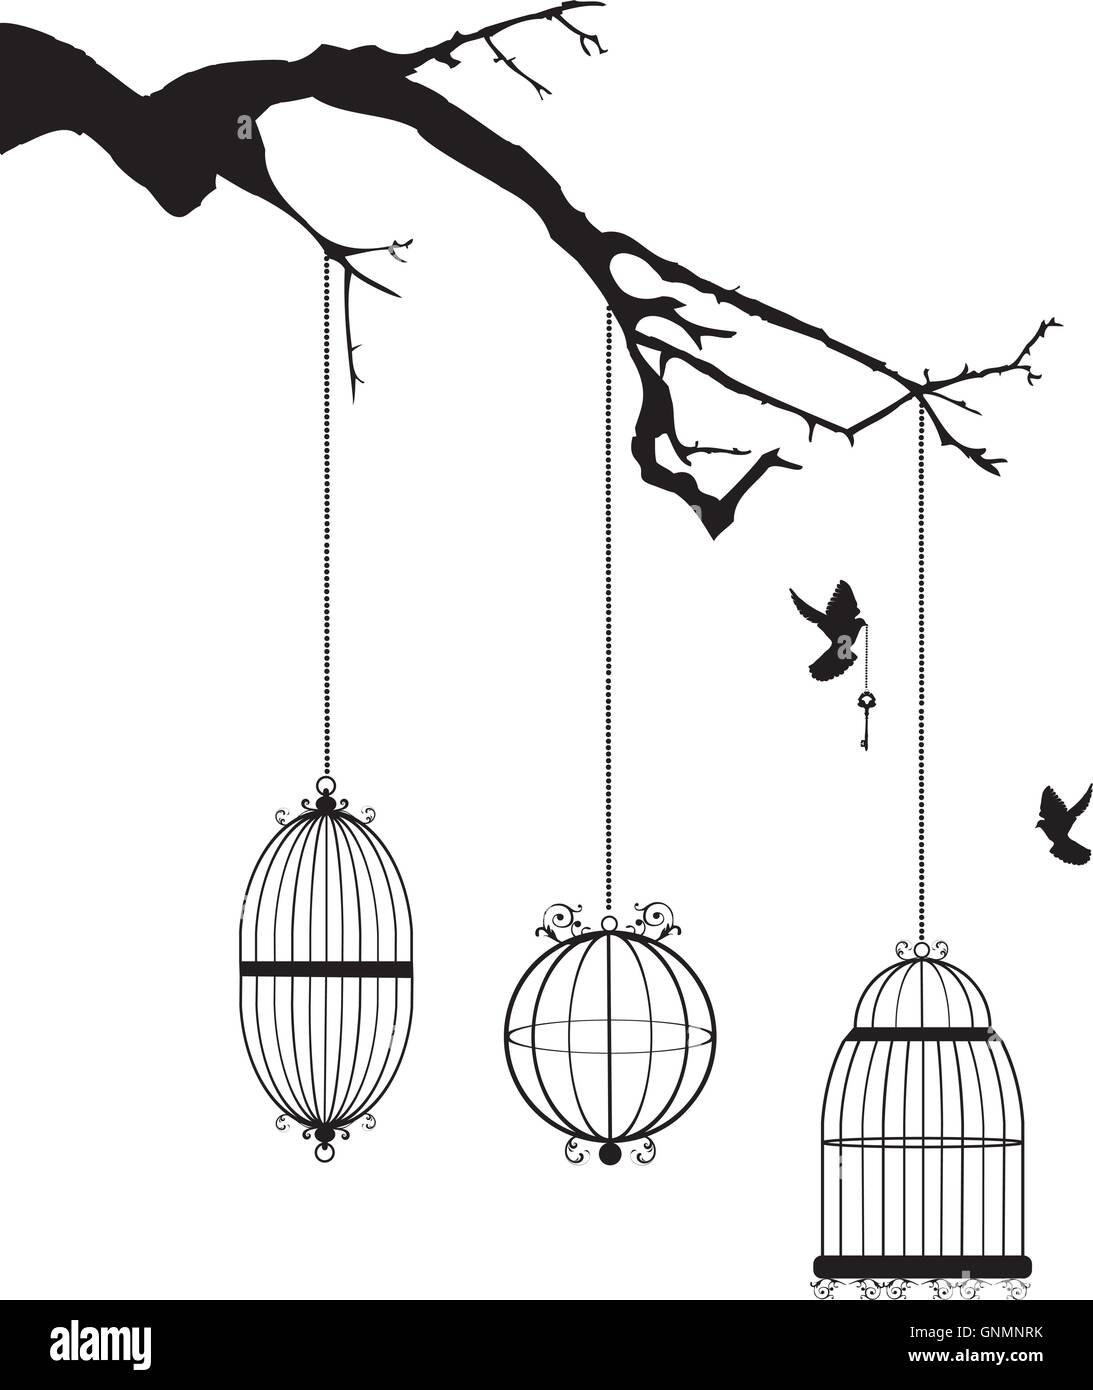 Les cages à oiseaux dans l'arbre Illustration de Vecteur